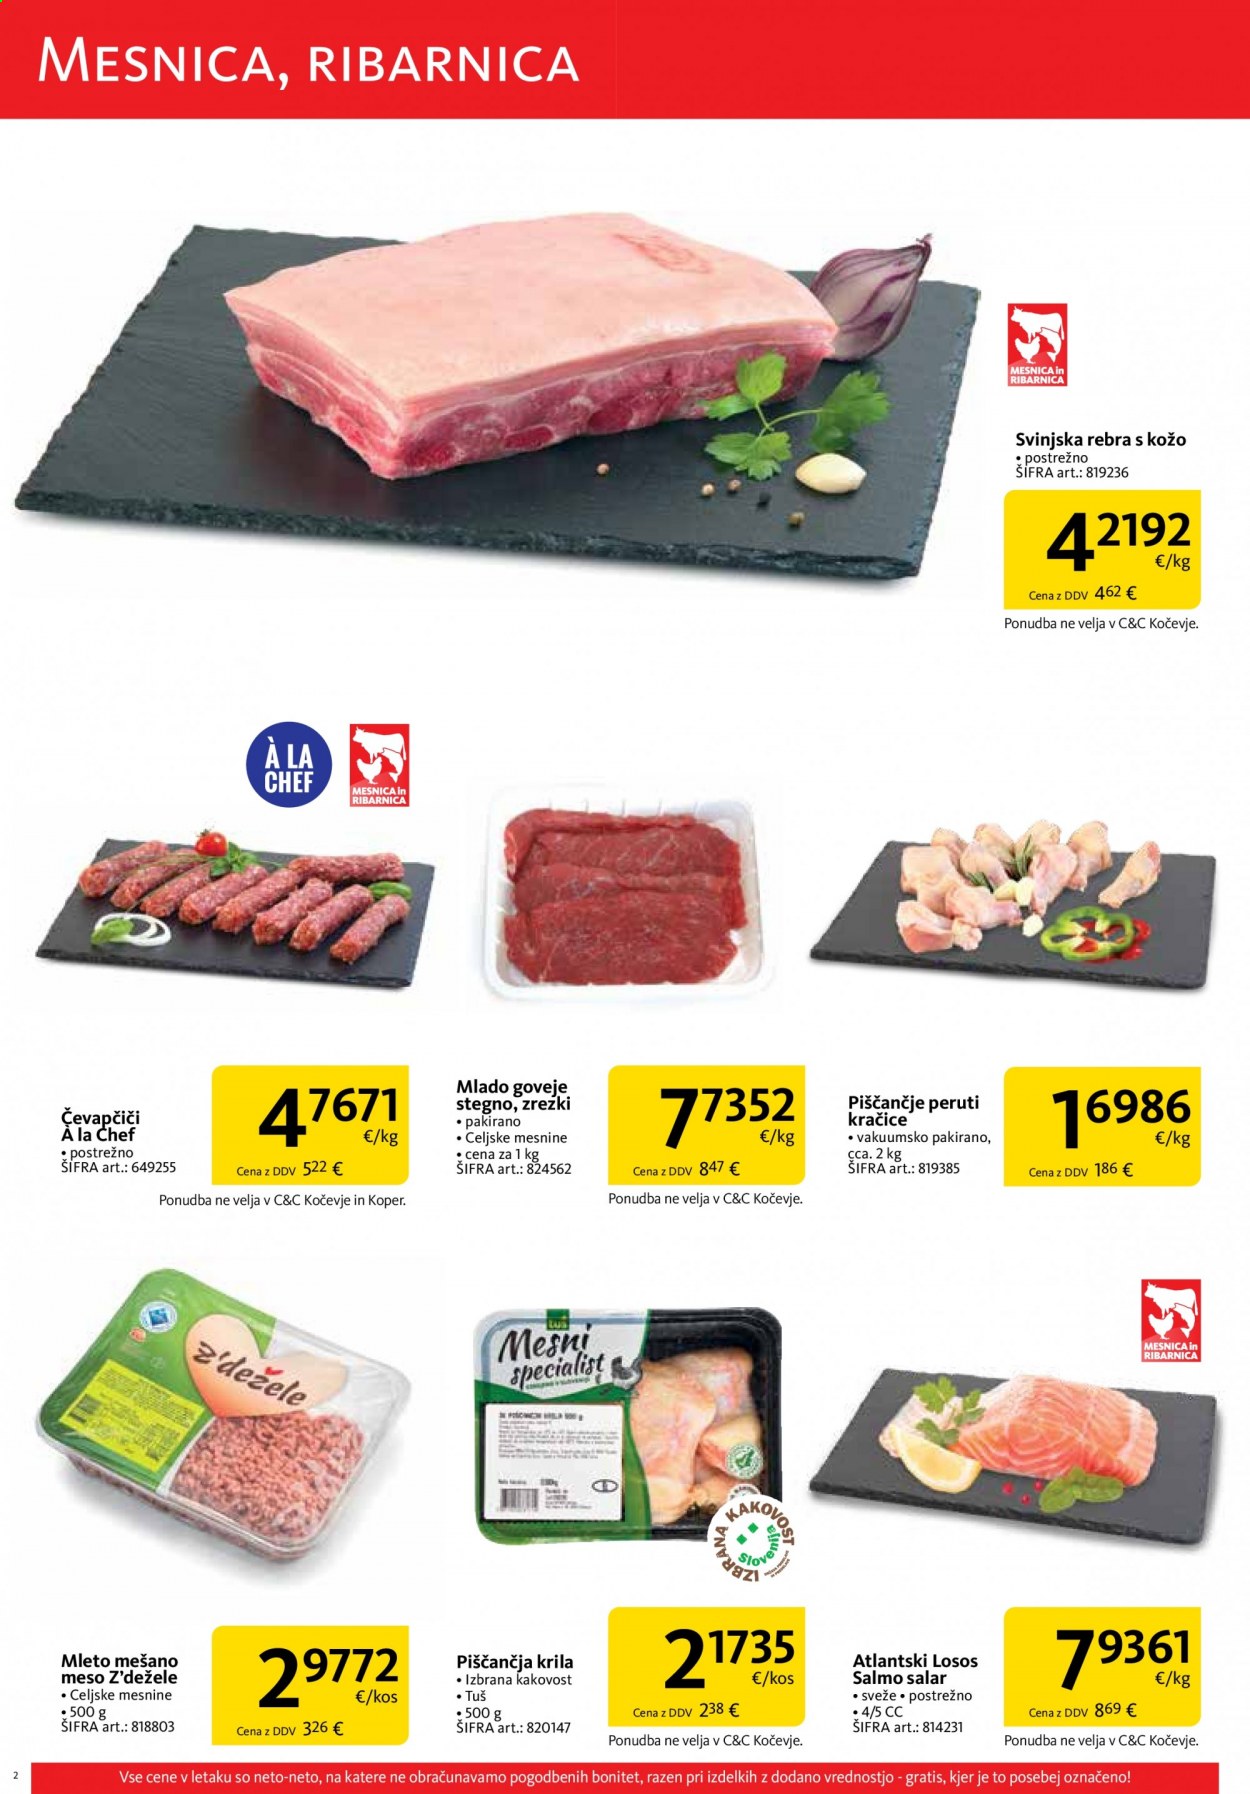 thumbnail - Tuš Cash & Carry katalog - 1.5.2021 - 31.5.2021 - Ponudba izdelkov - stegno, goveje meso, rebra, goveje stegno, svinjska rebra, svinjsko meso, losos. Stran 2.